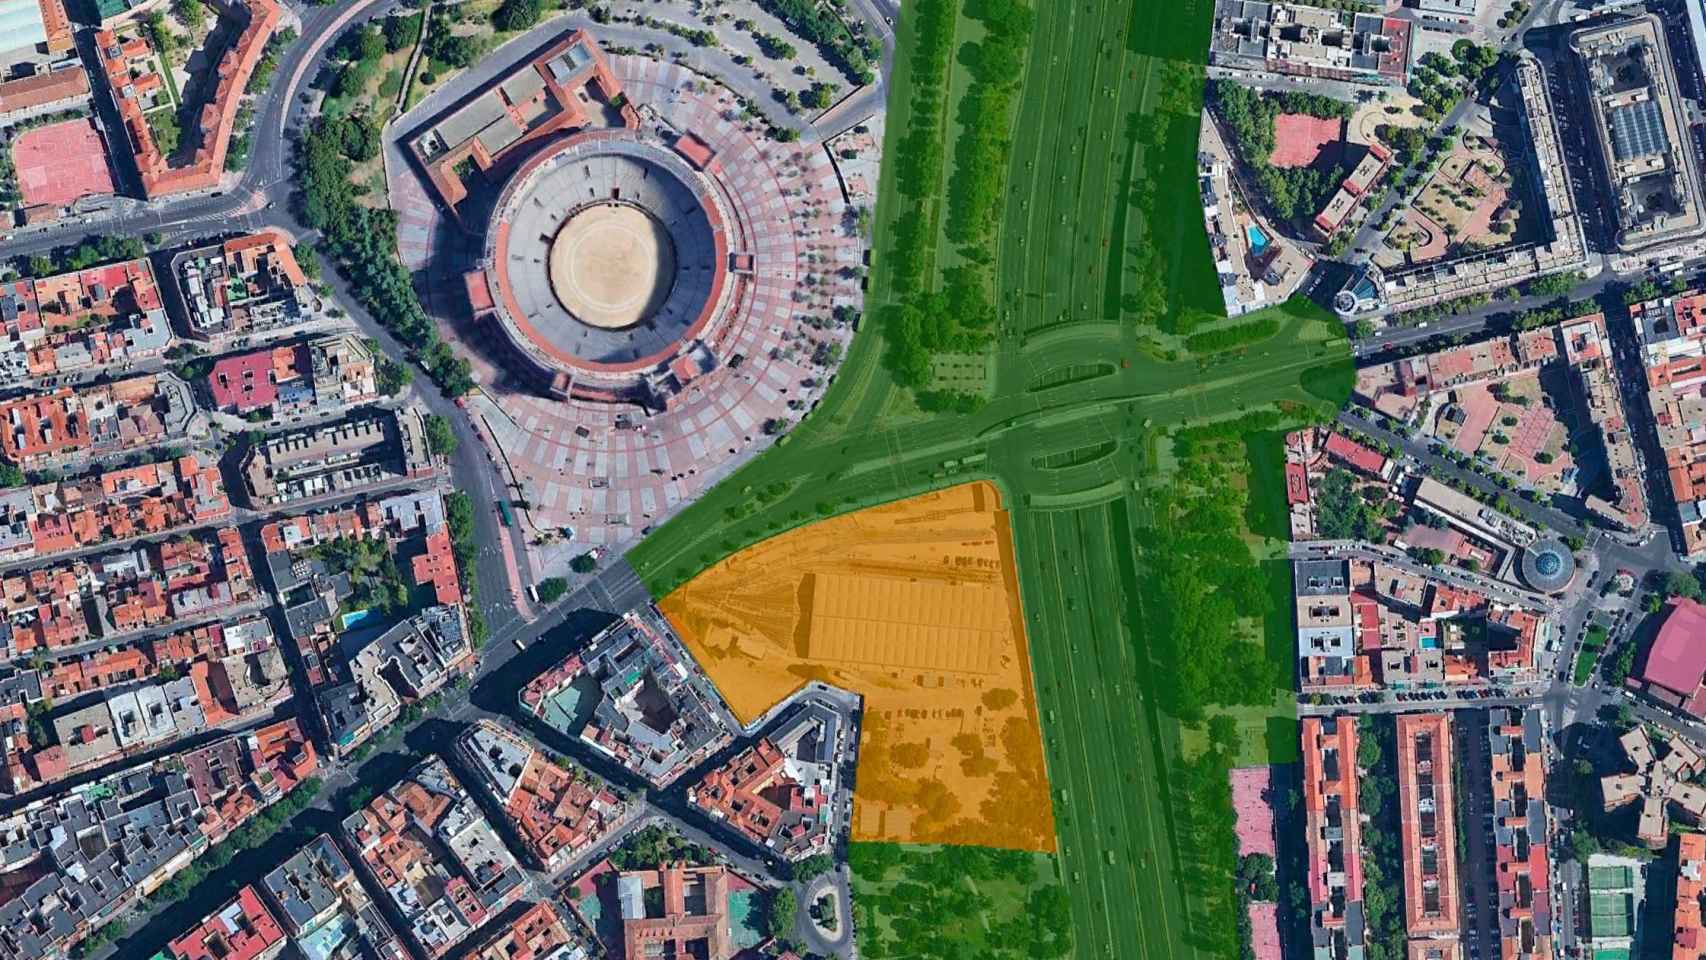 Espacio de 20.000 m² para un uso cultural y social justo enfrente de la plaza de Ventas.